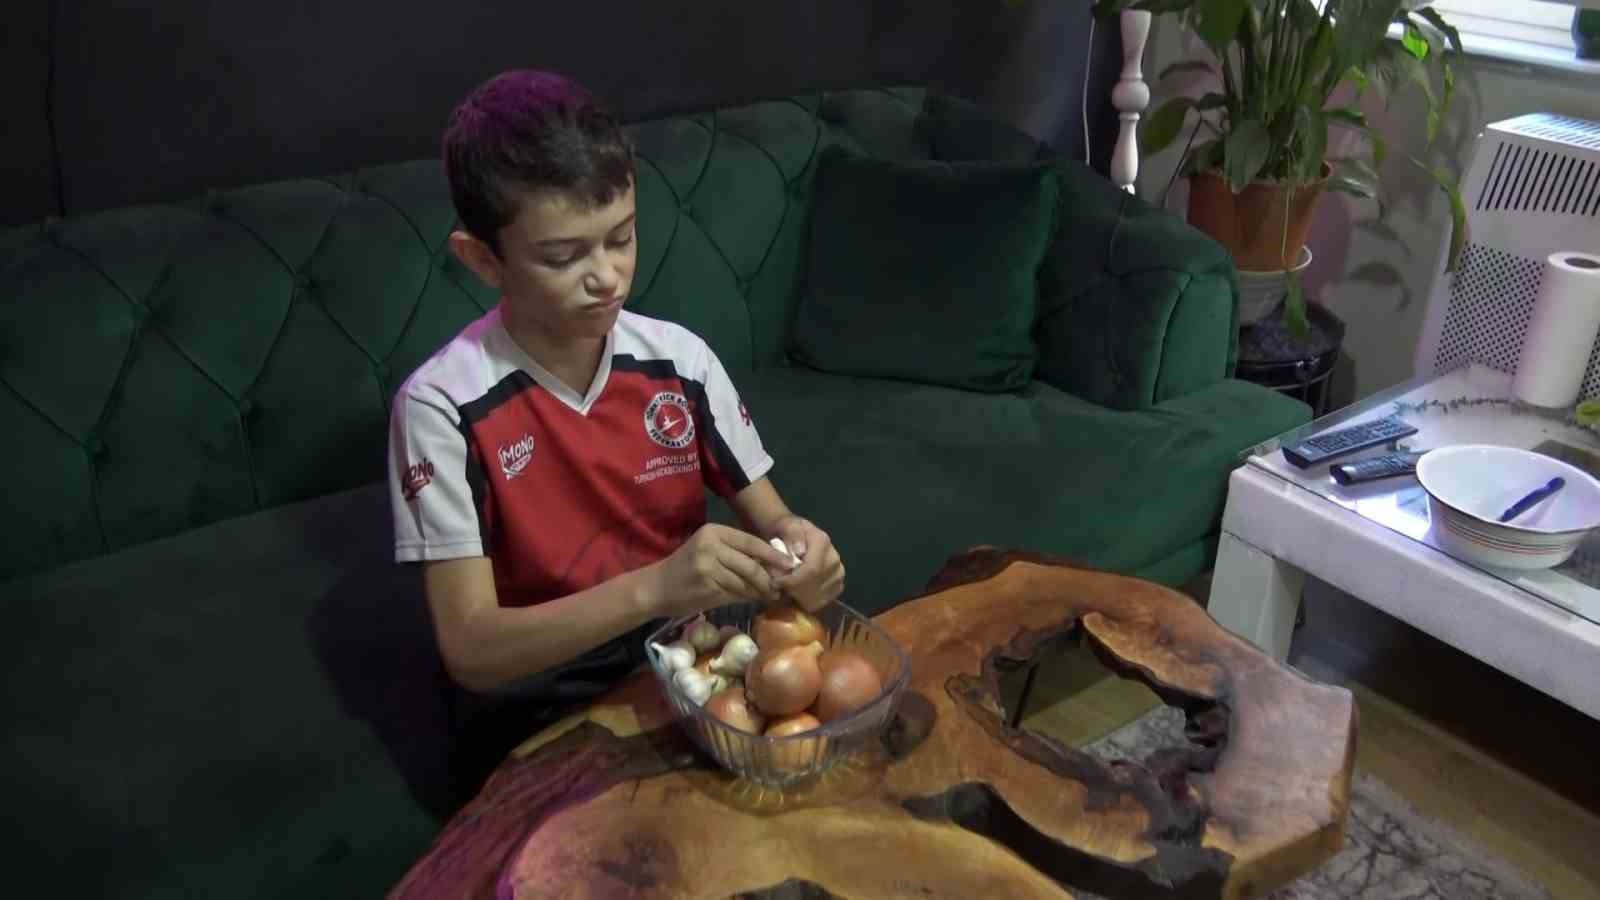 12 yaşındaki Eymen’i görenler şaşkına dönüyor: Okula giderken bile sarımsak yiyor